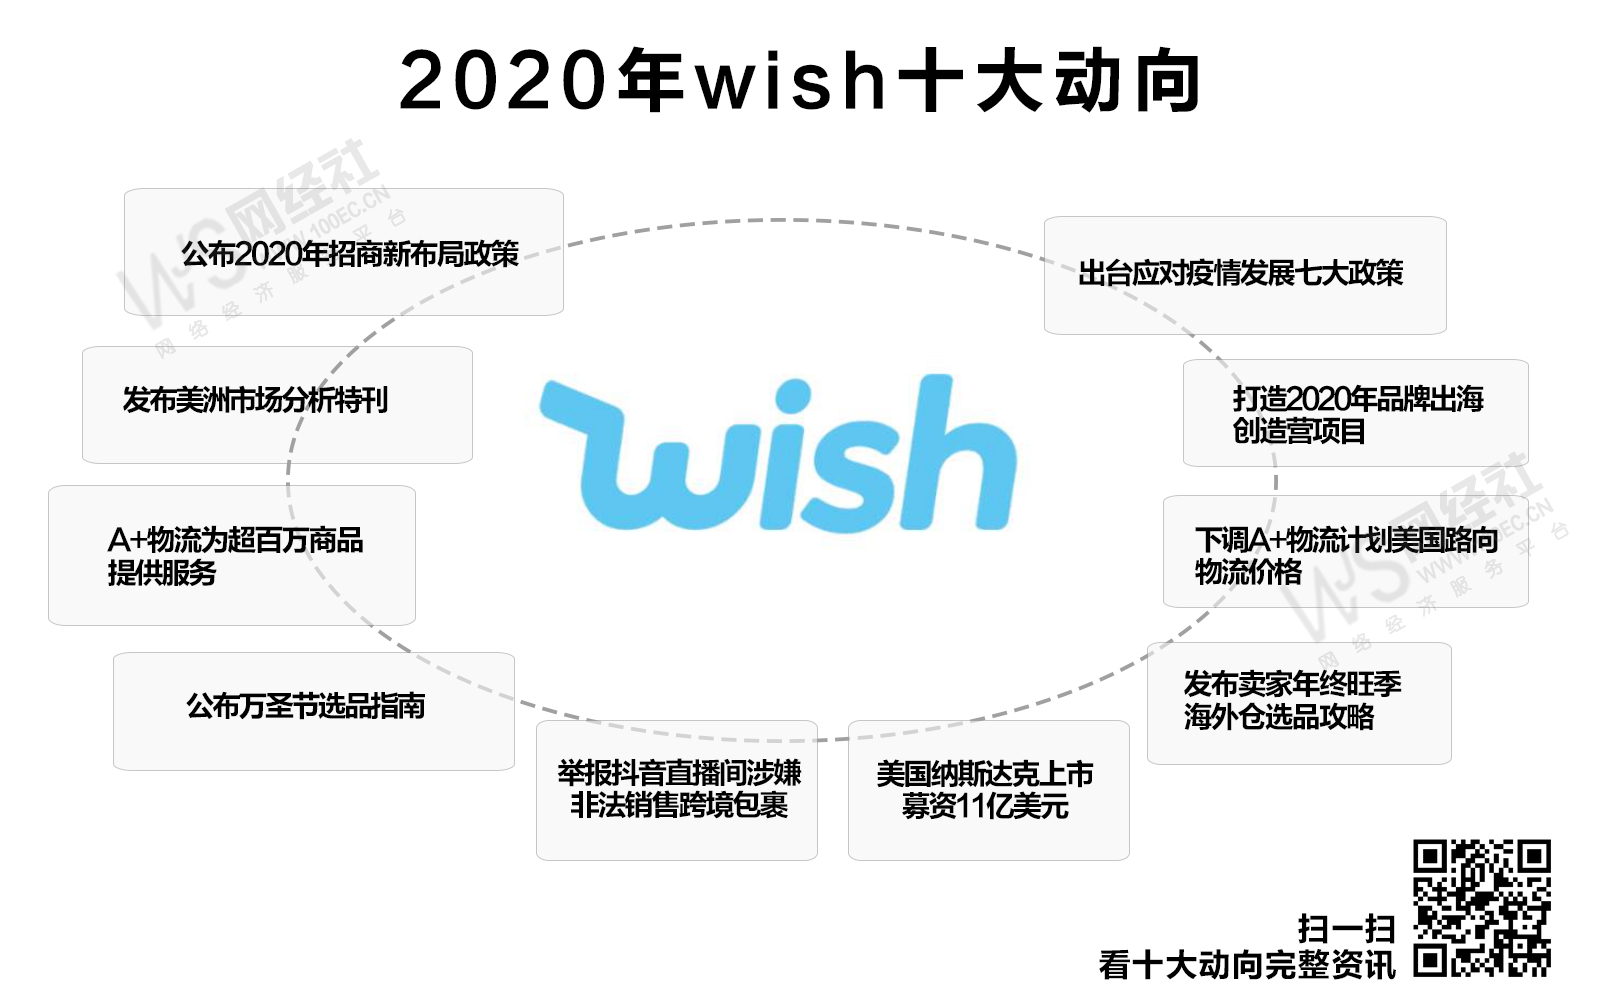 2020年wish十大动向(1).jpg